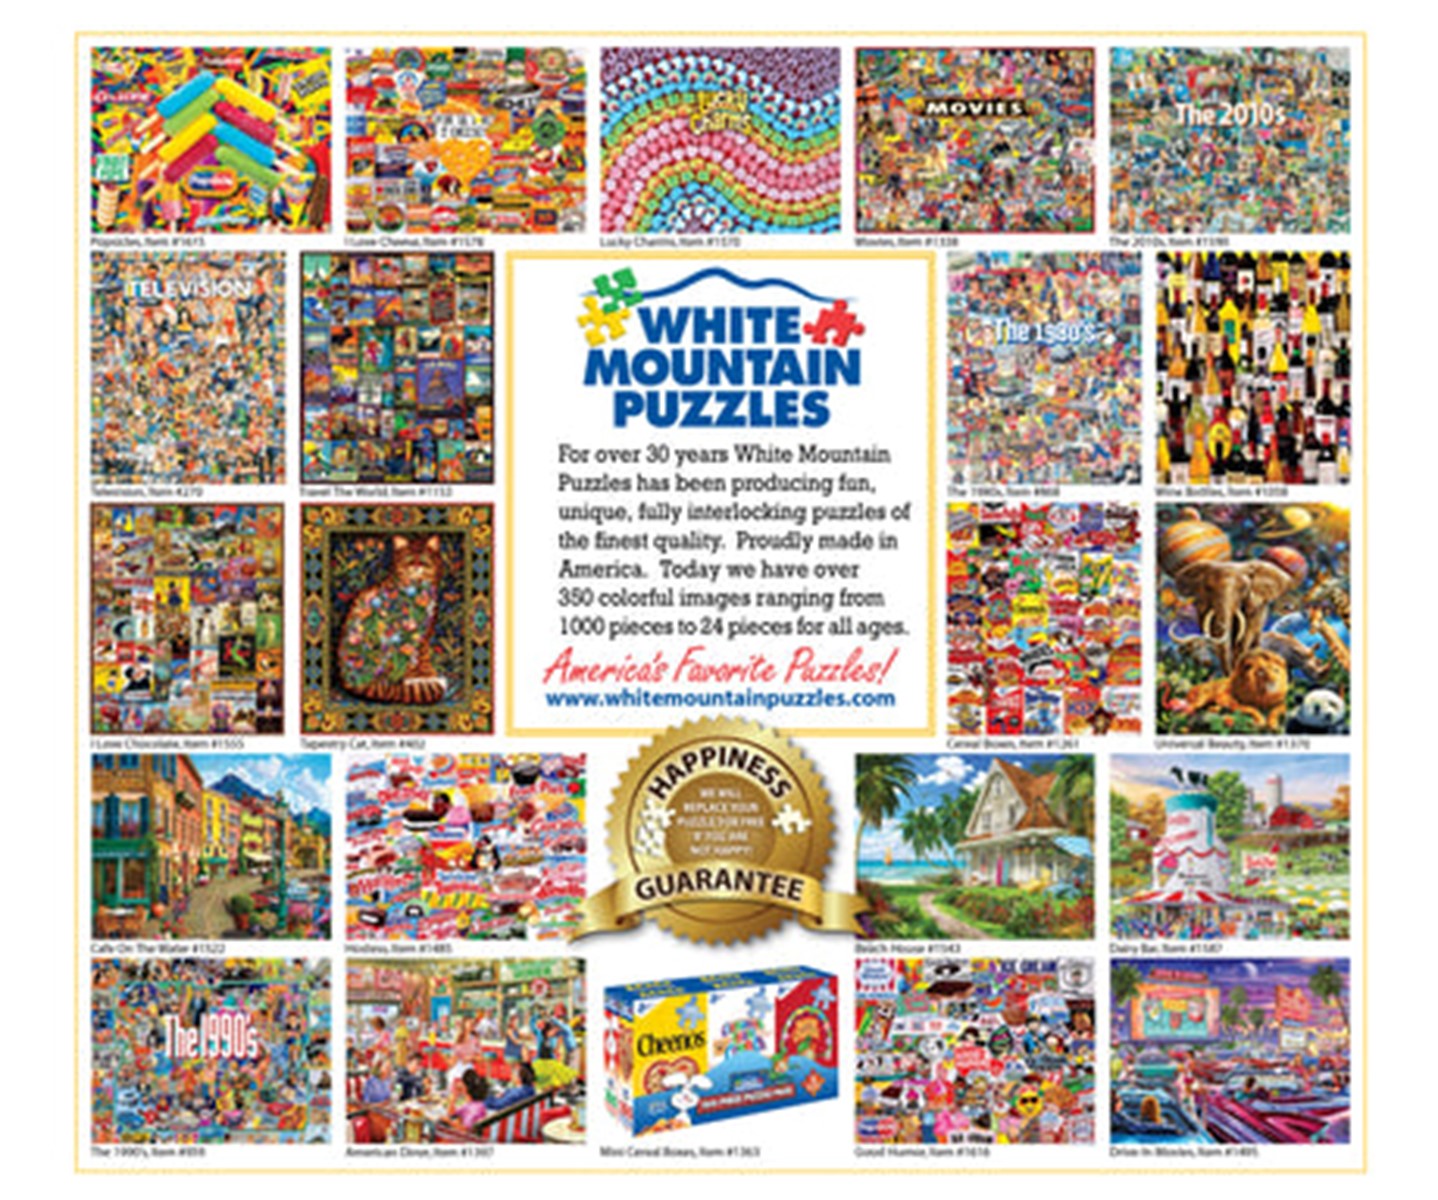 State Birds & Flowers Jigsaw Puzzle - 1000 Piece